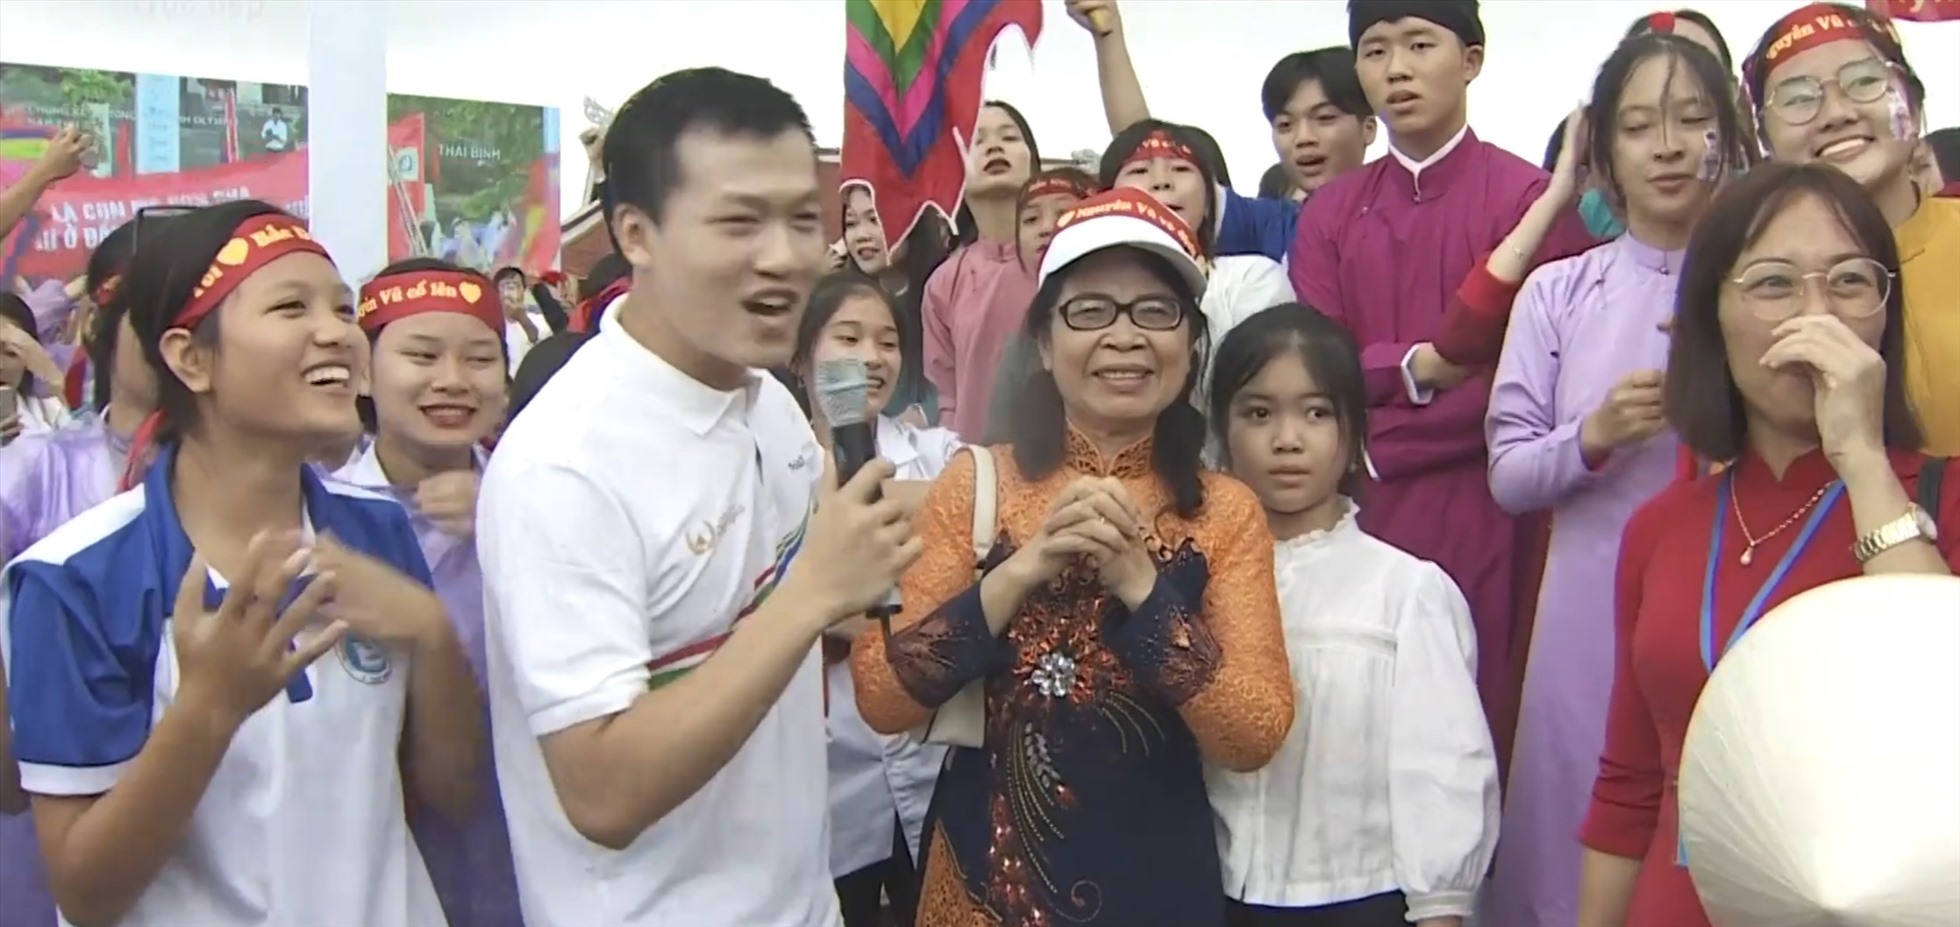 Điểm cầu truyền hình tại Thái Bình vỡ òa vui sướng khi Đặng Lê Nguyên Vũ giành vòng nguyệt quế. Ảnh: CTV